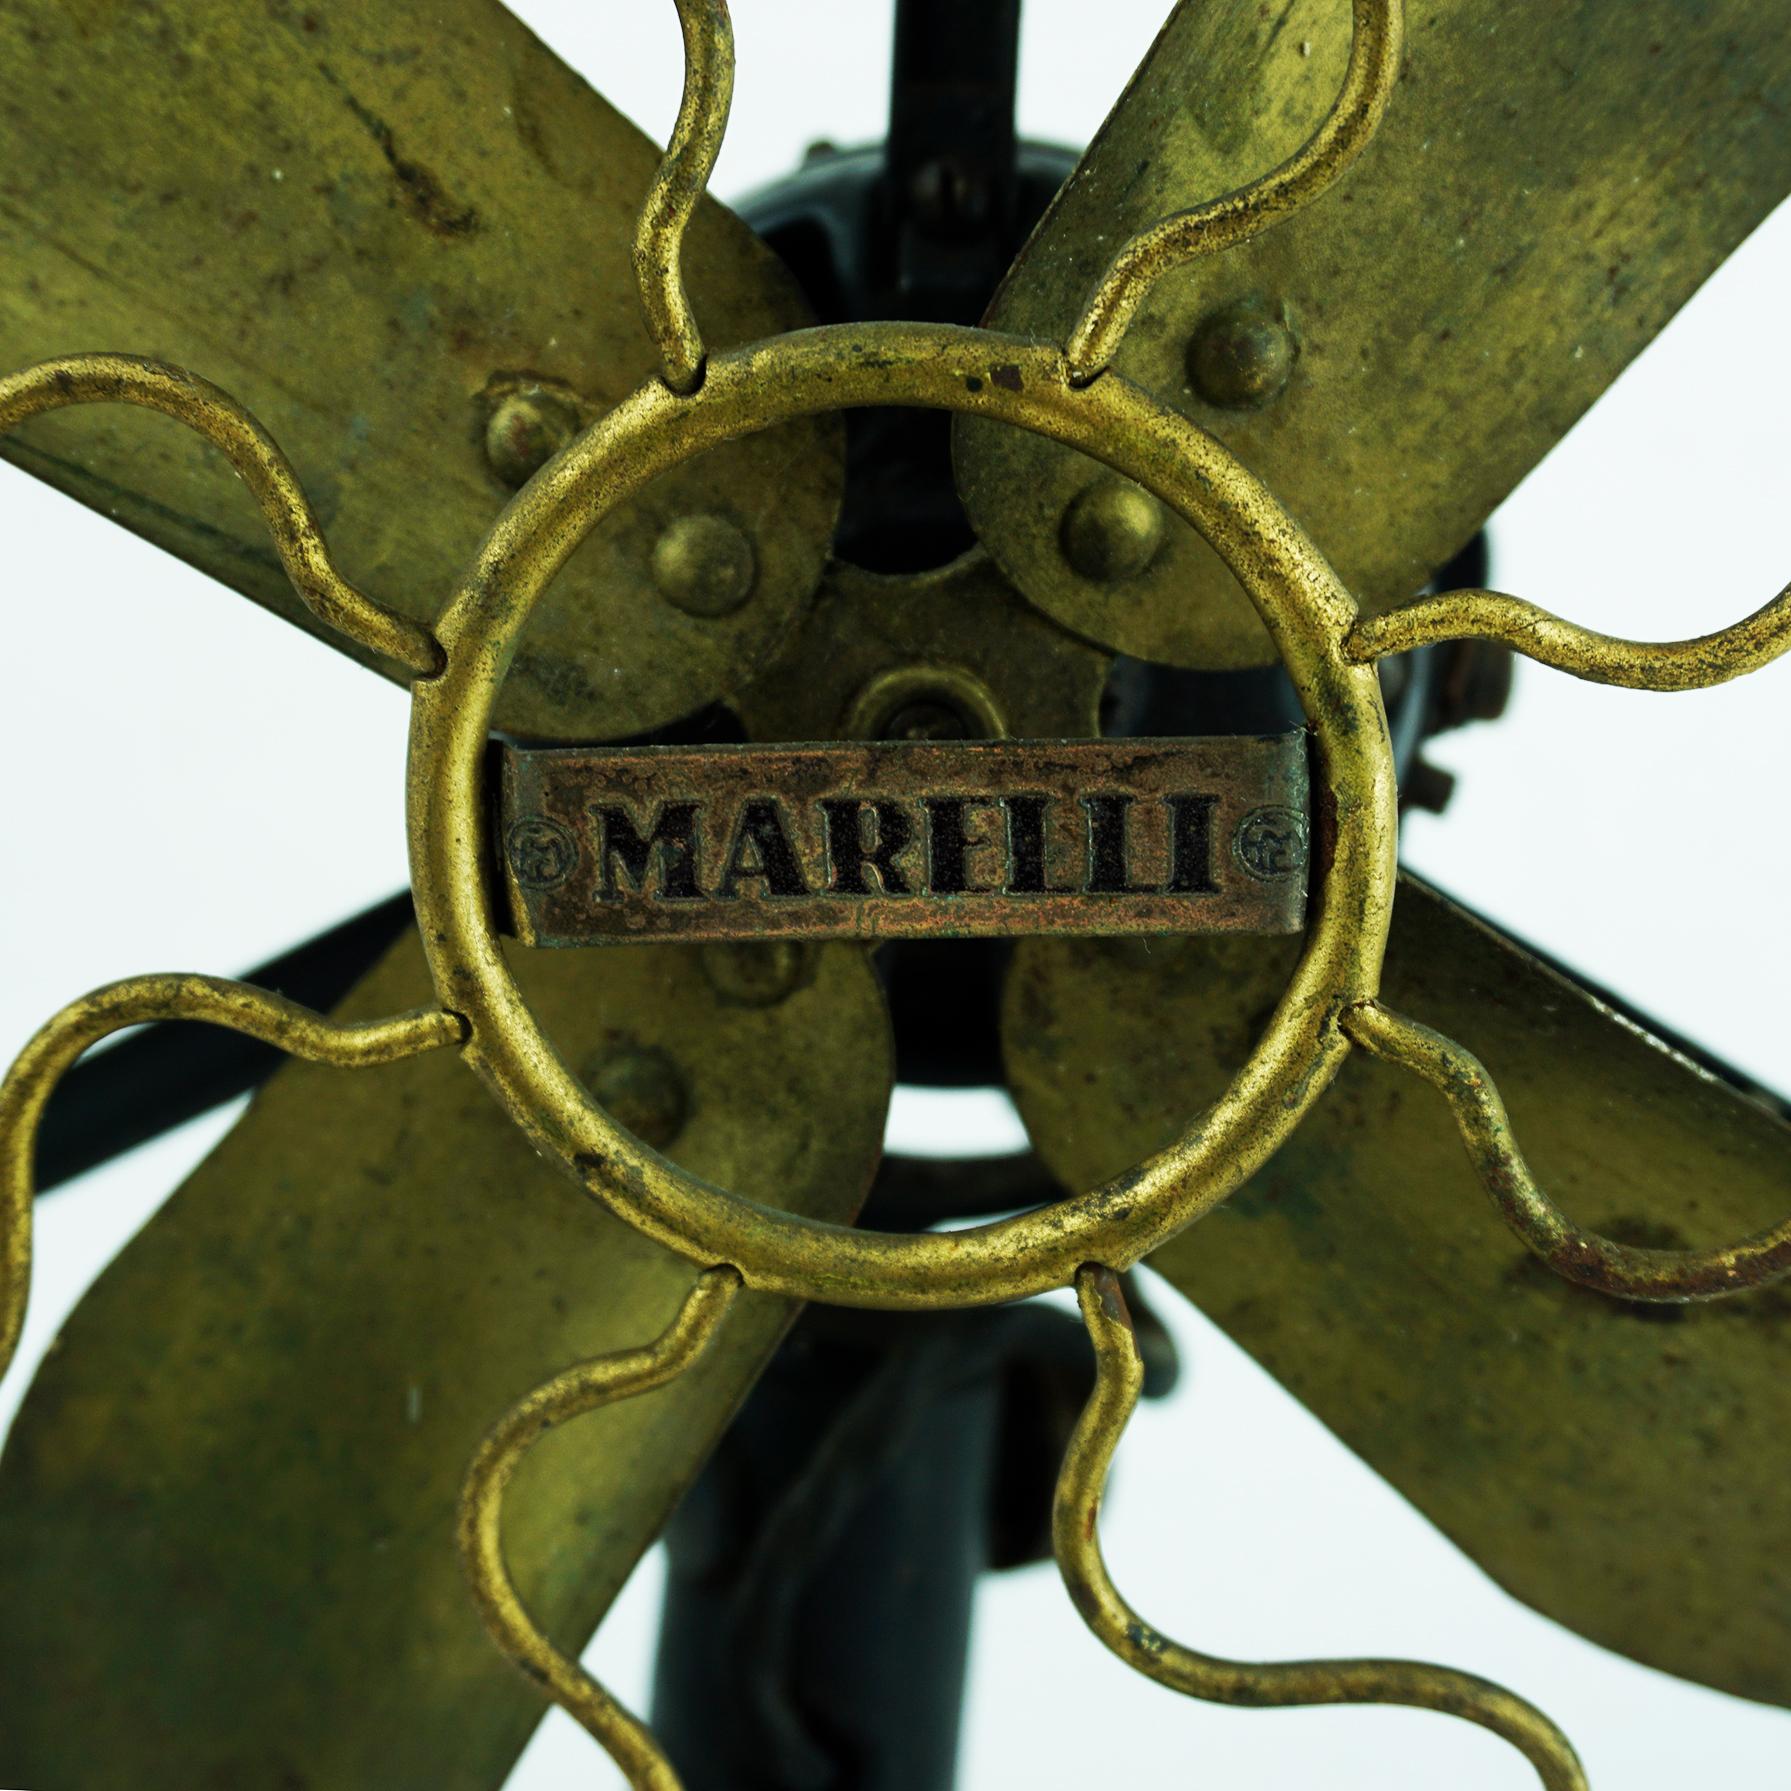 Cet iconoclaste ventilateur de table italien a été produit par Marelli dans les années 1940.
Il est dans son état d'origine, avec une certaine usure et quelques pertes à la base conformes à l'âge et à l'utilisation, conservant une belle patine.